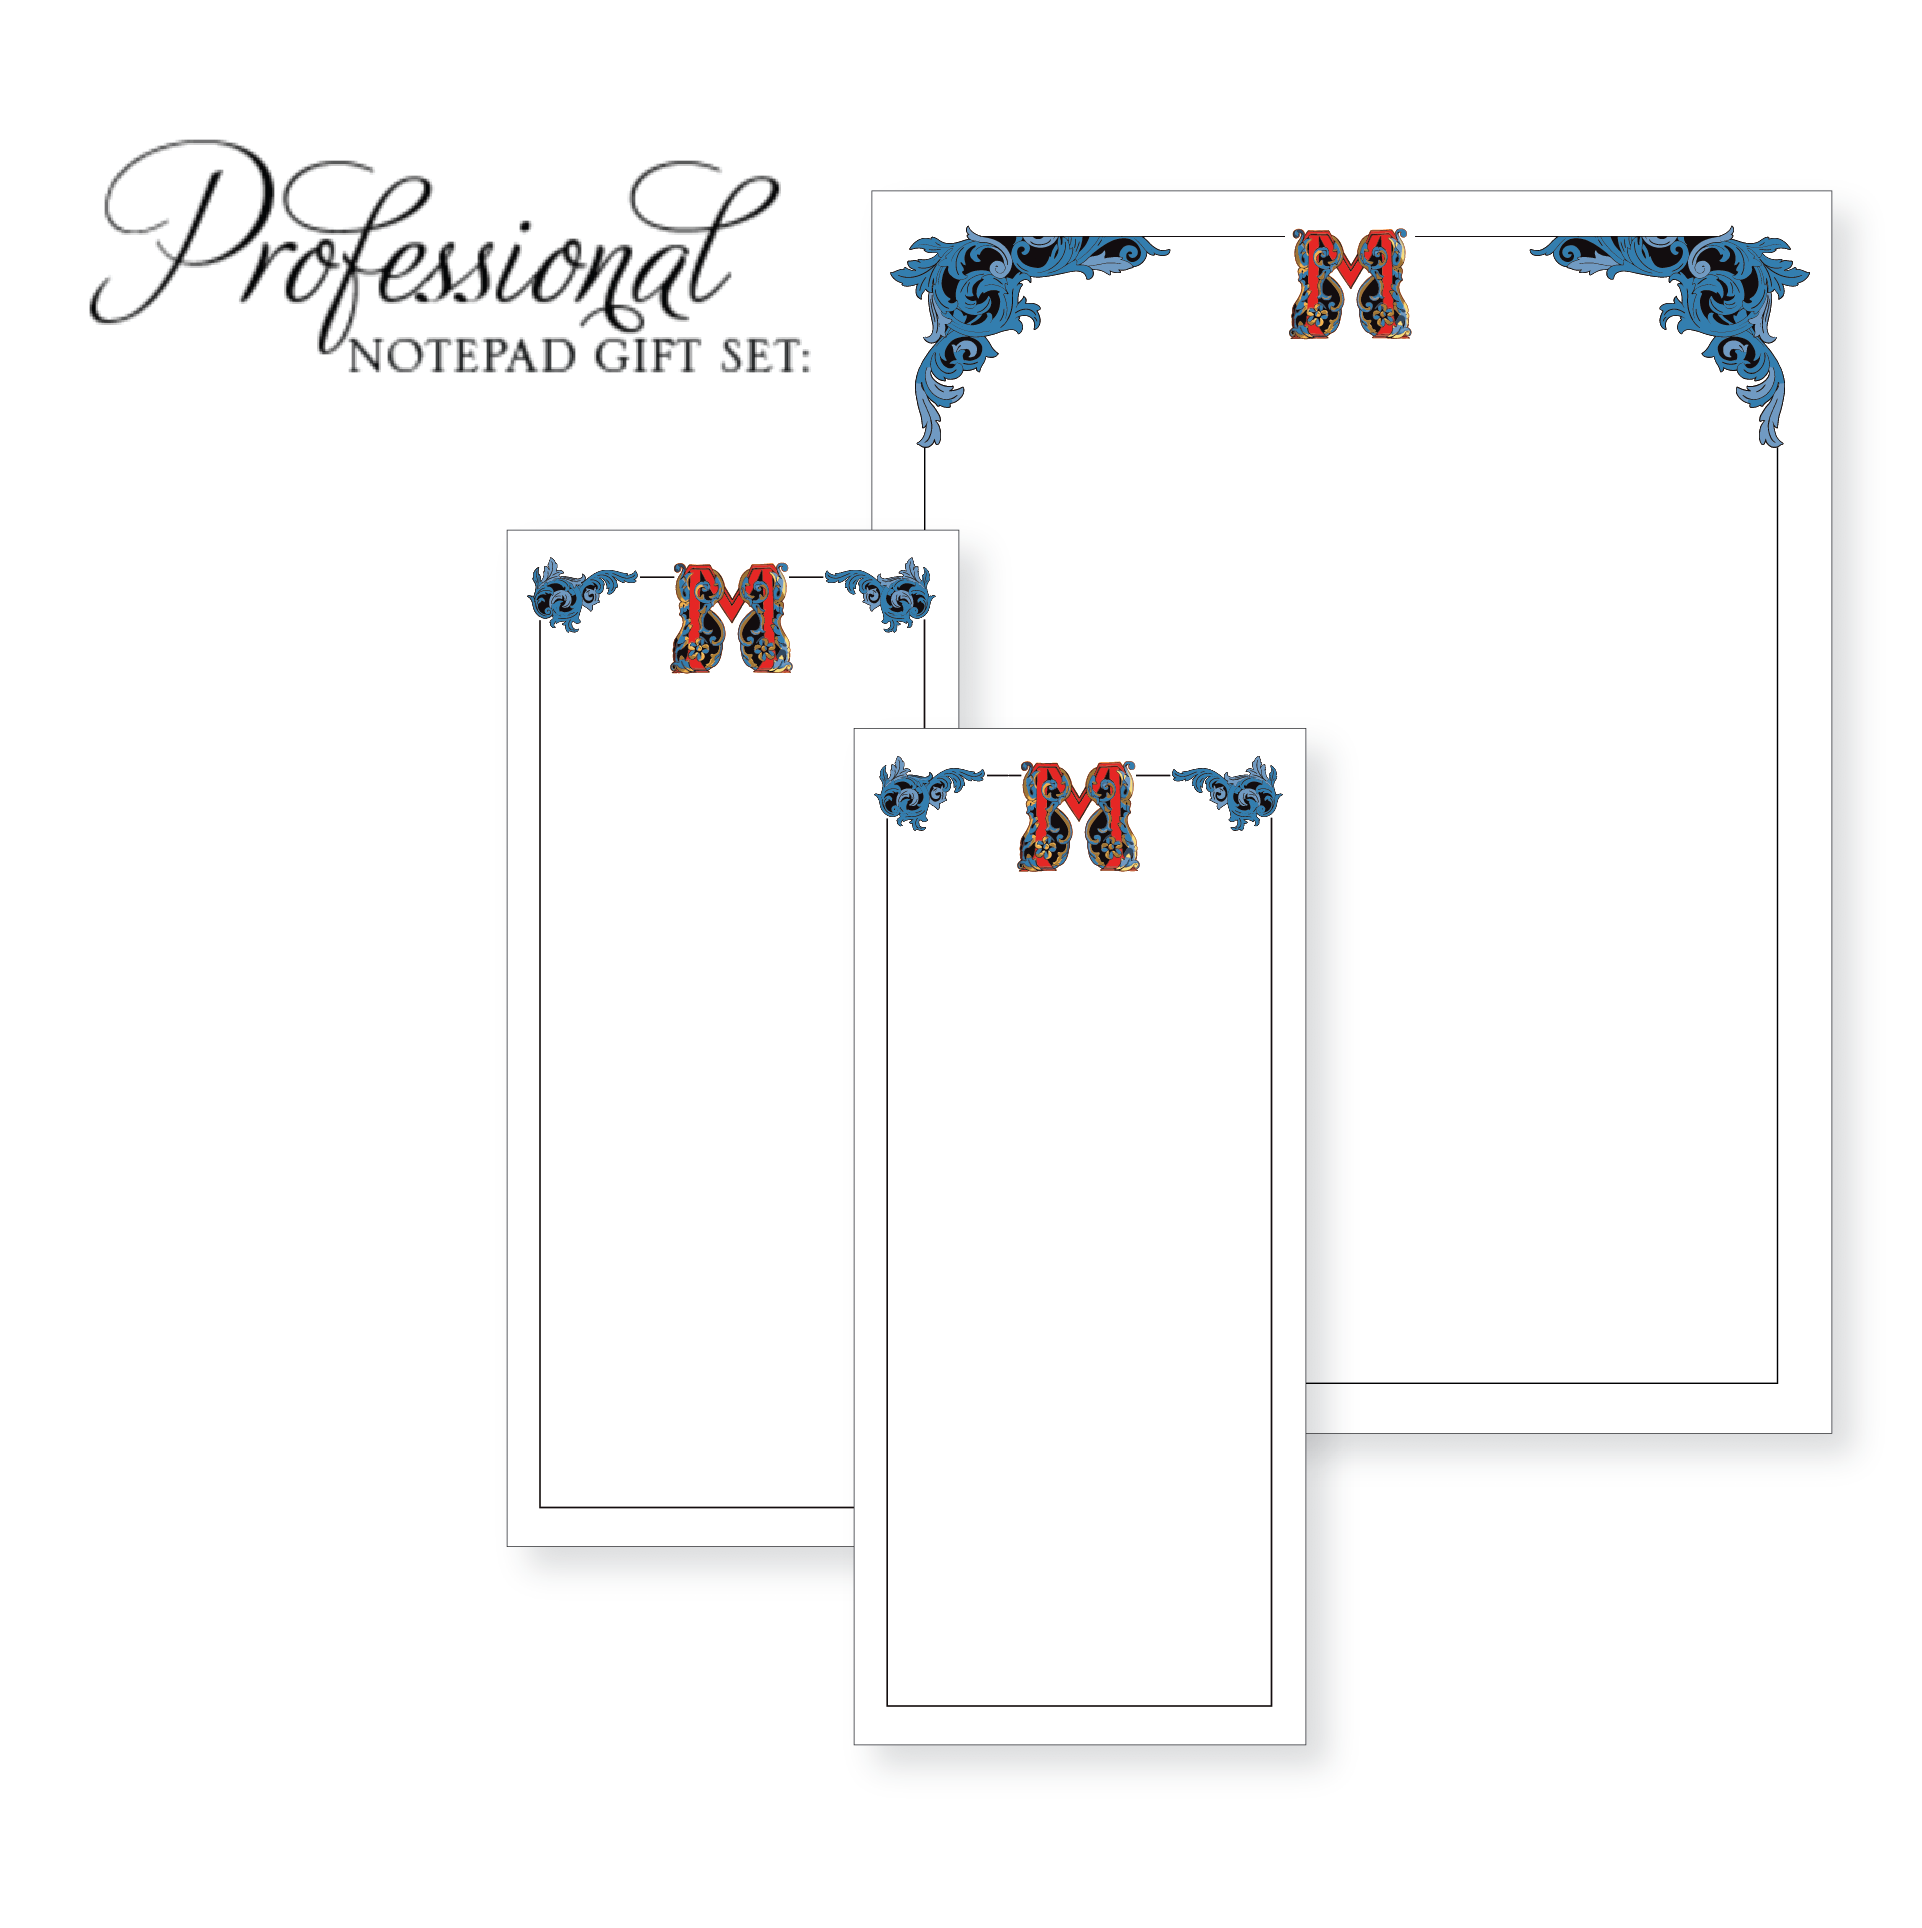 Donatella Vivid Customized Notepad Gift Set - RSVP Style